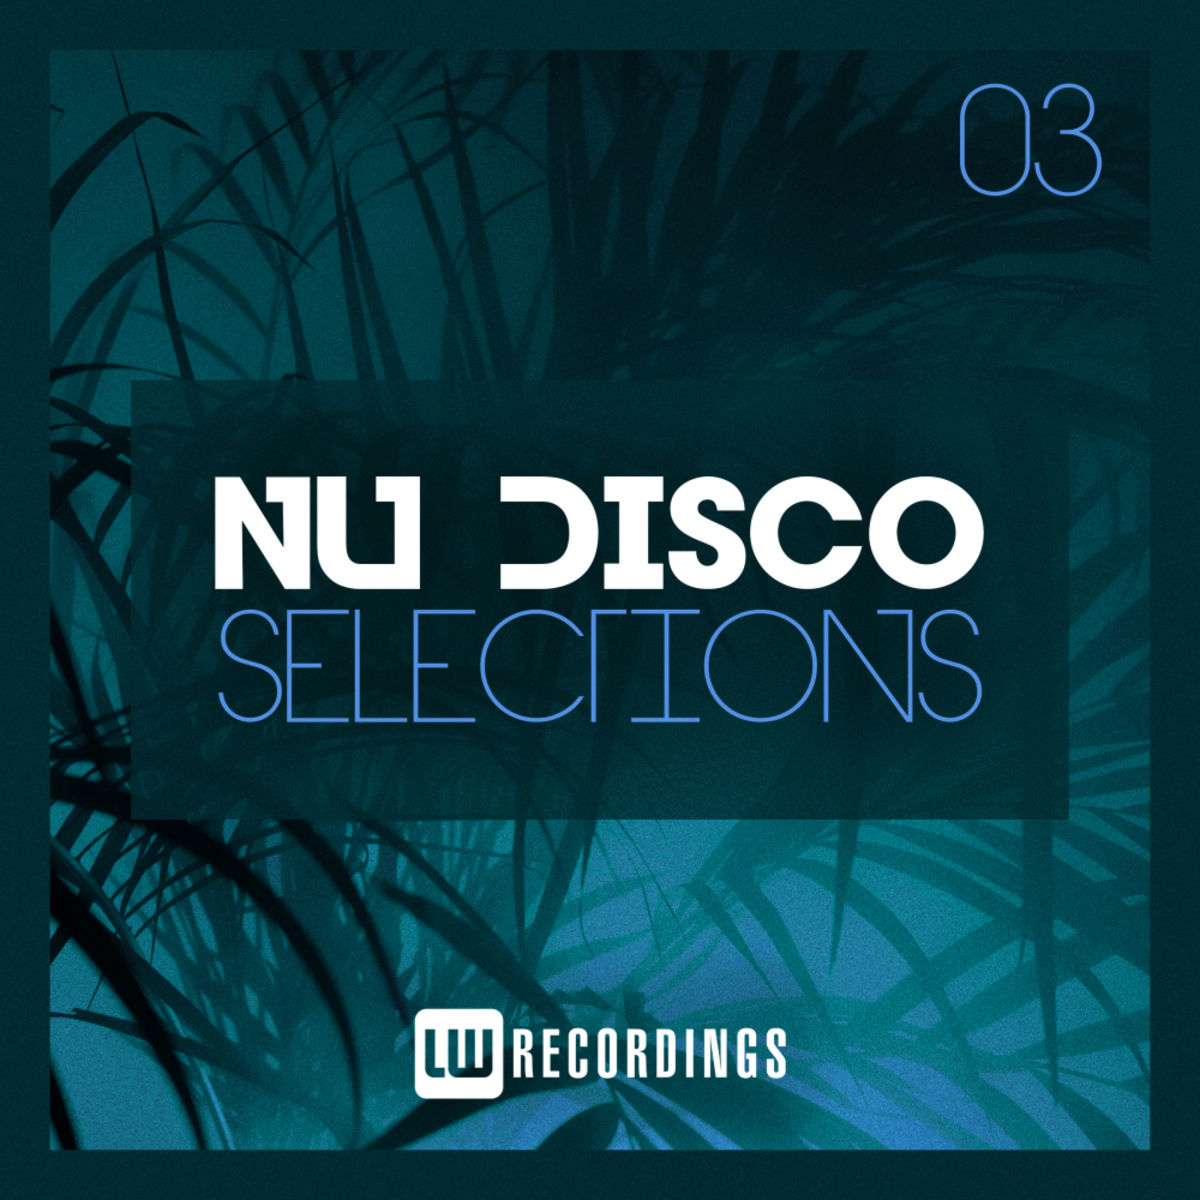 VA - Nu-Disco Selections, Vol. 03 / LW Recordings